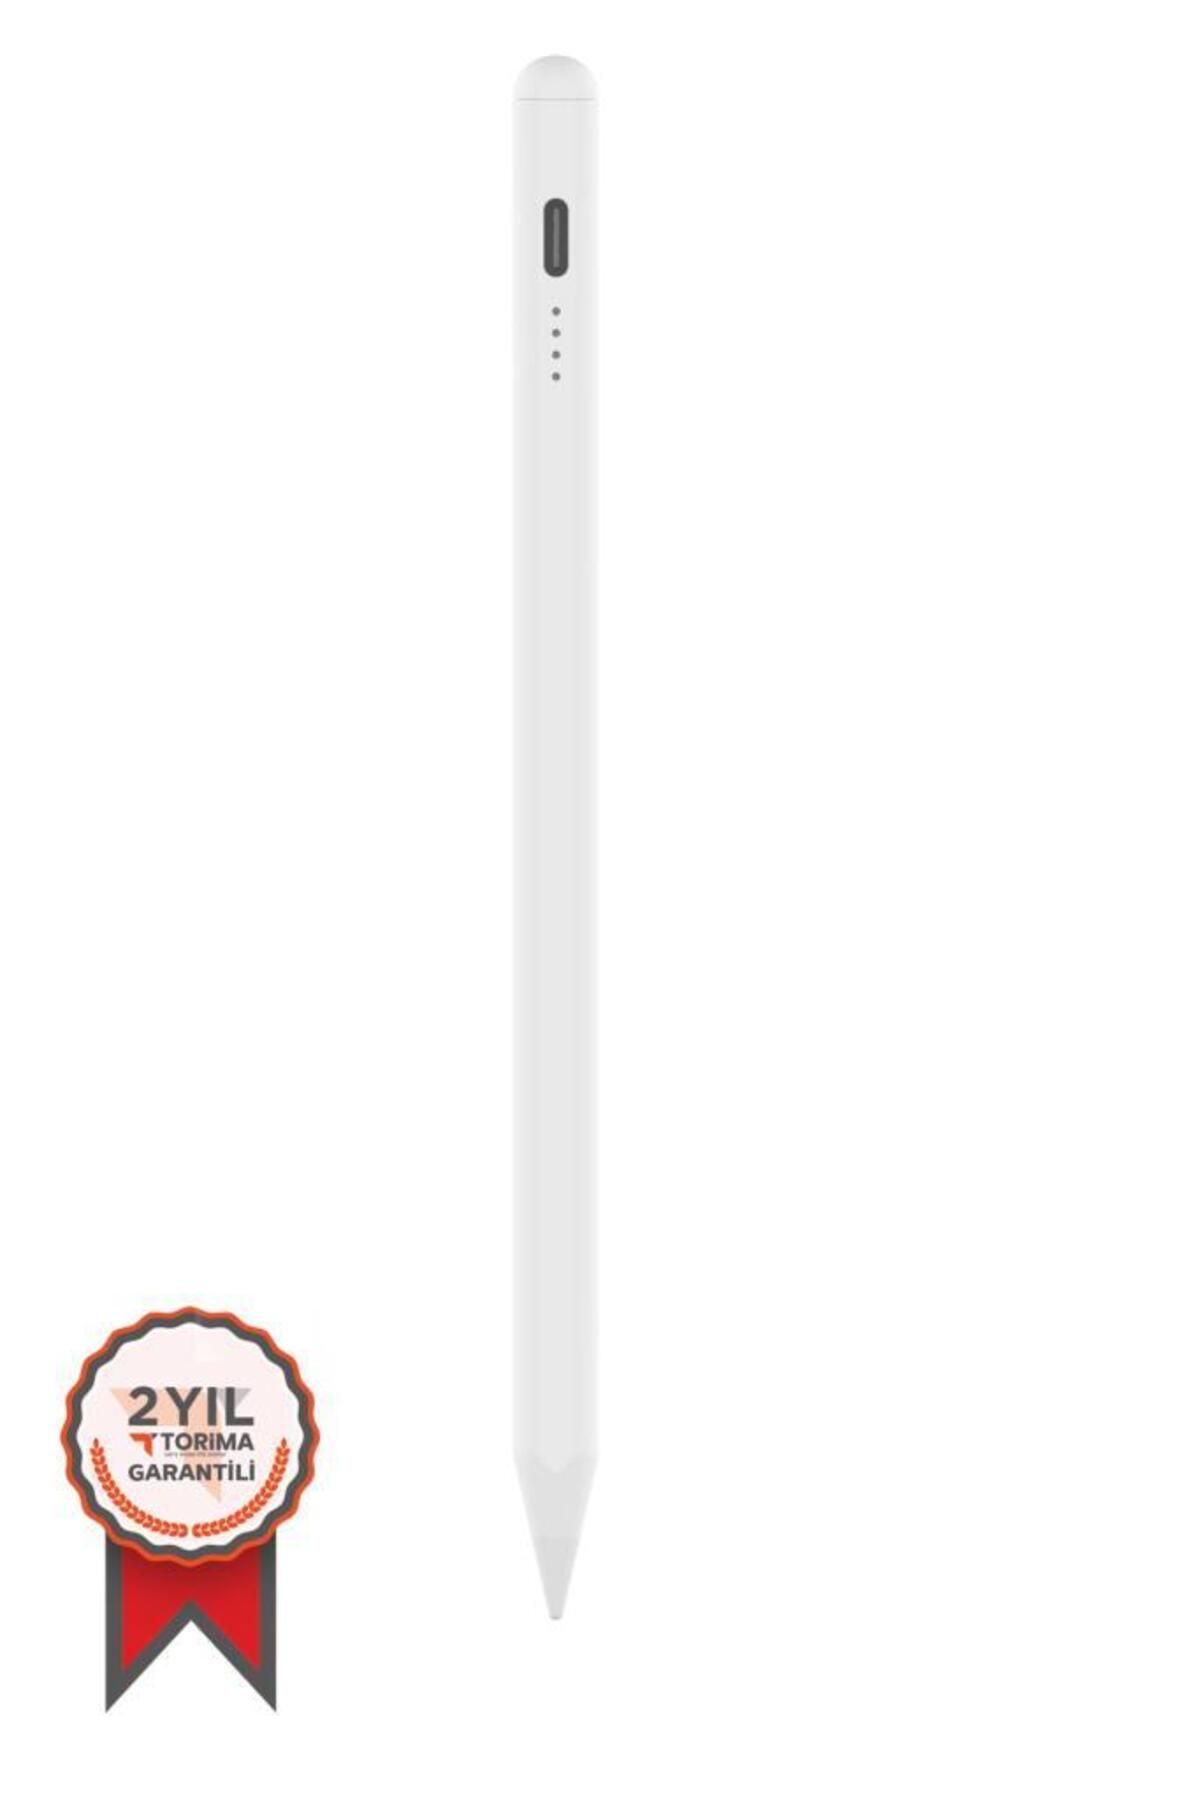 Torima P-01 Beyaz For Xiaomi Mi Pad Sensitive Stylus Pen Kapasitif Dokunmatik Kalem Çizim Ve Tasarım